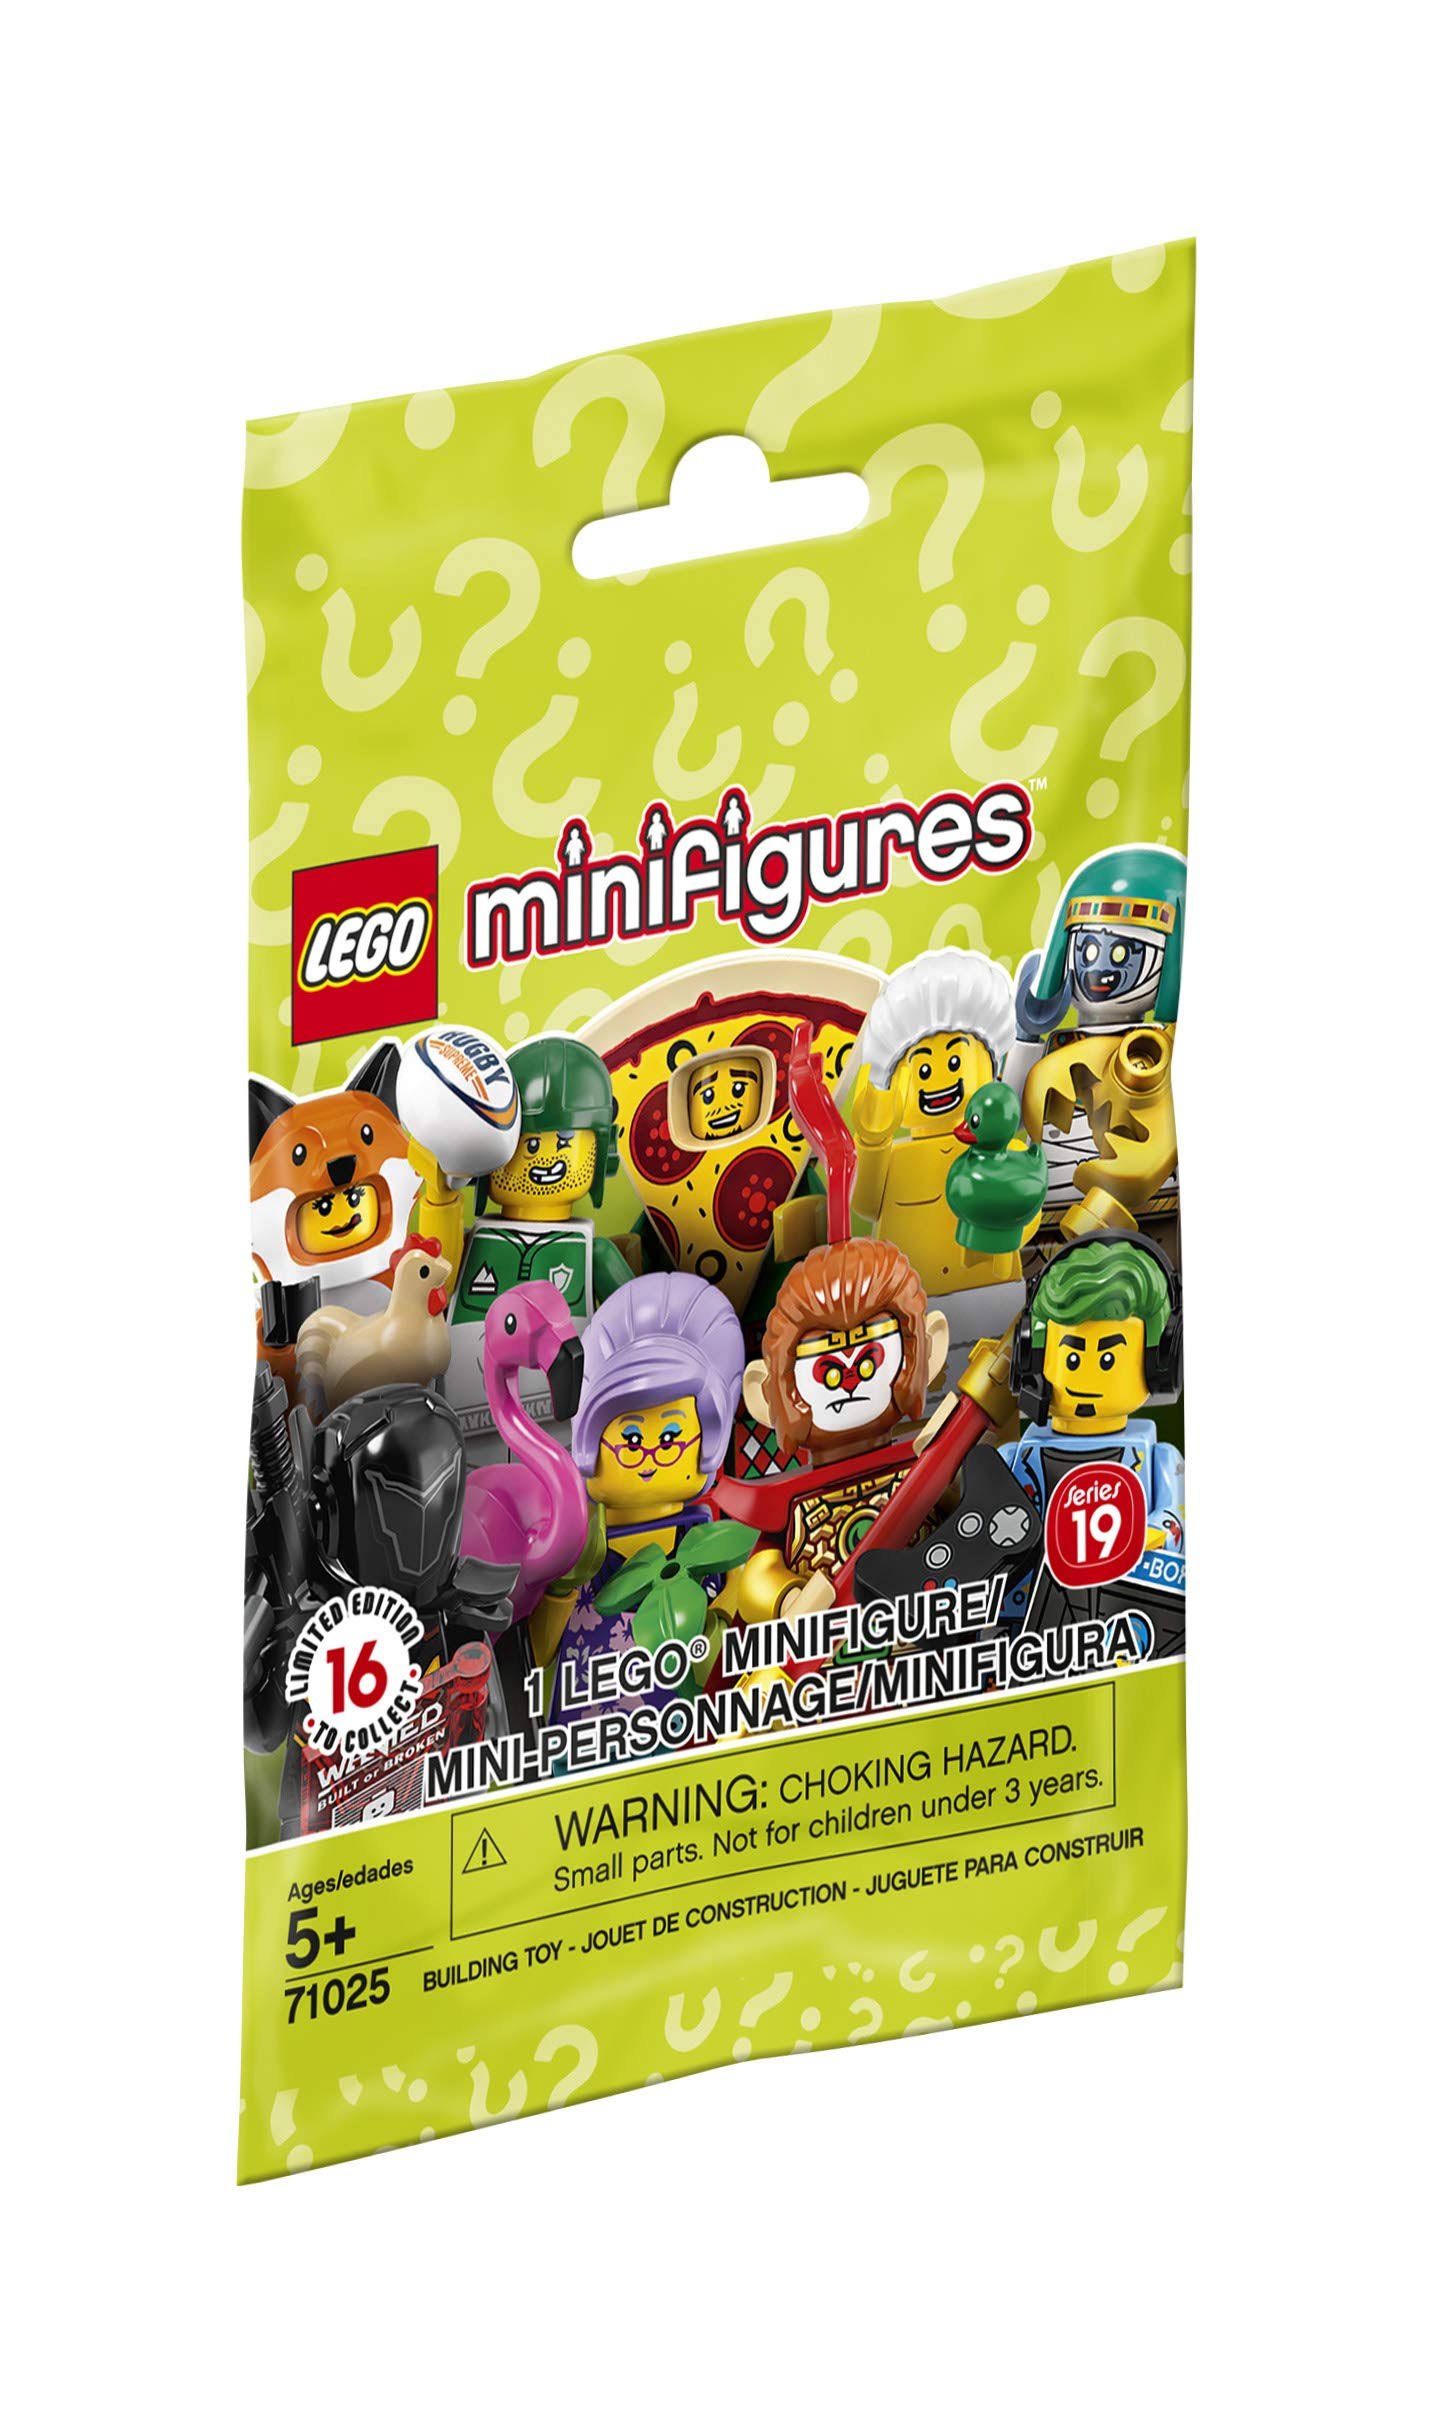 LEGO 71025 Minifigure Series 19 Random Set of 1 Minifigure